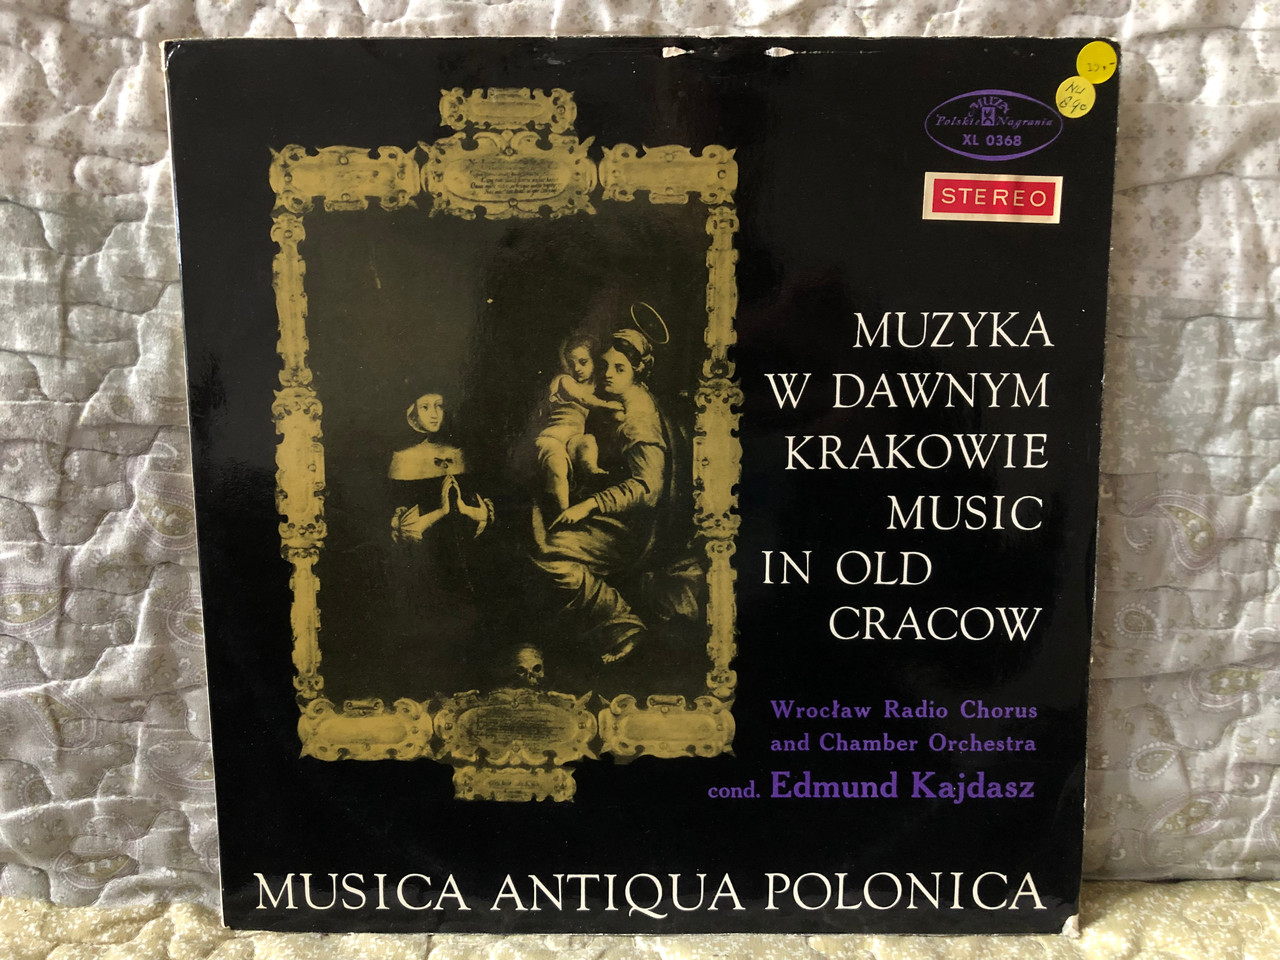 https://cdn10.bigcommerce.com/s-62bdpkt7pb/products/0/images/273503/Muzyka_W_Dawnym_Krakowie_Music_In_Old_Cracow_-_Wrocaw_Radio_Chorus_Chamber_Orchestra_cond._Edmund_Kajdasz_Musica_Antiqua_Polonica_Polskie_Nagrania_Muza_LP_Stereo_XL_0368_1__46323.1682785792.1280.1280.JPG?c=2&_gl=1*1lyi3ip*_ga*MjA2NTIxMjE2MC4xNTkwNTEyNTMy*_ga_WS2VZYPC6G*MTY4Mjc3ODg2OC44NzAuMS4xNjgyNzg1NTE2LjQwLjAuMA..